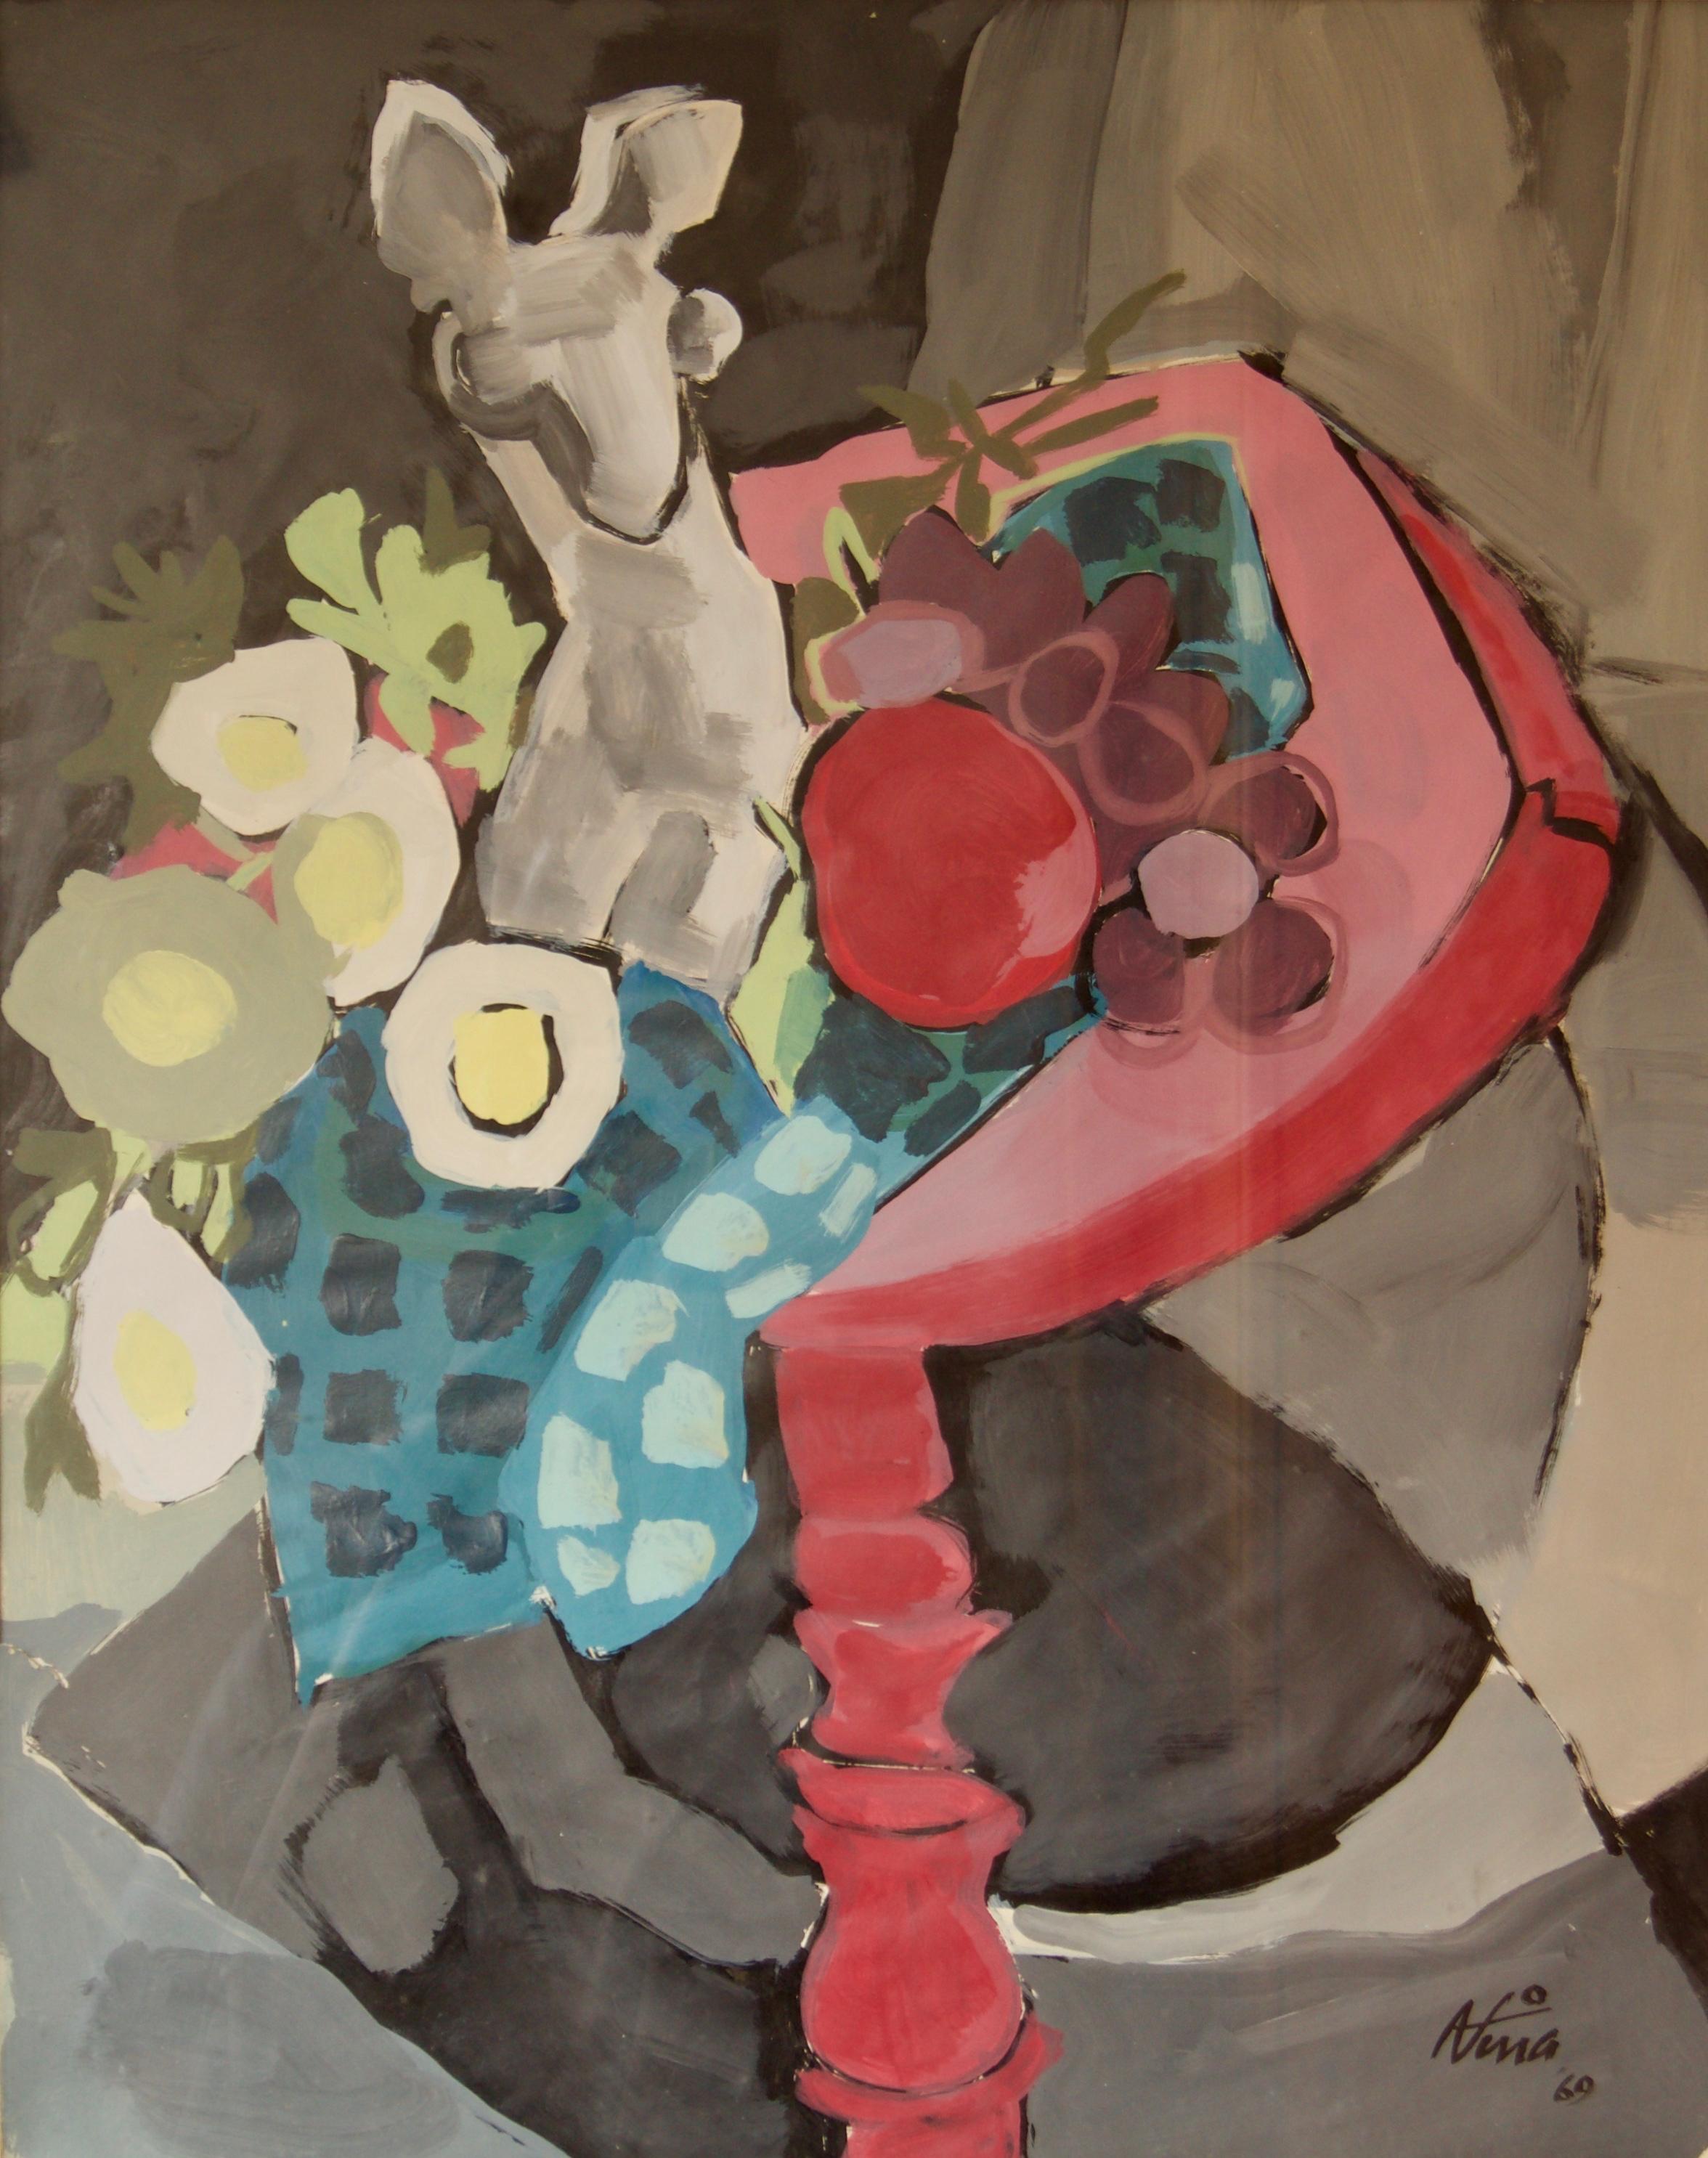 Nina - 1969

Aquarell in einem Holzrahmen unter Glas

Schlagworte: abstrakt, Vase, Tisch, Tischtuch, Stillleben, Obst, Apfel, Aquarell, rot, Tier, Eier, blau, Blumen.